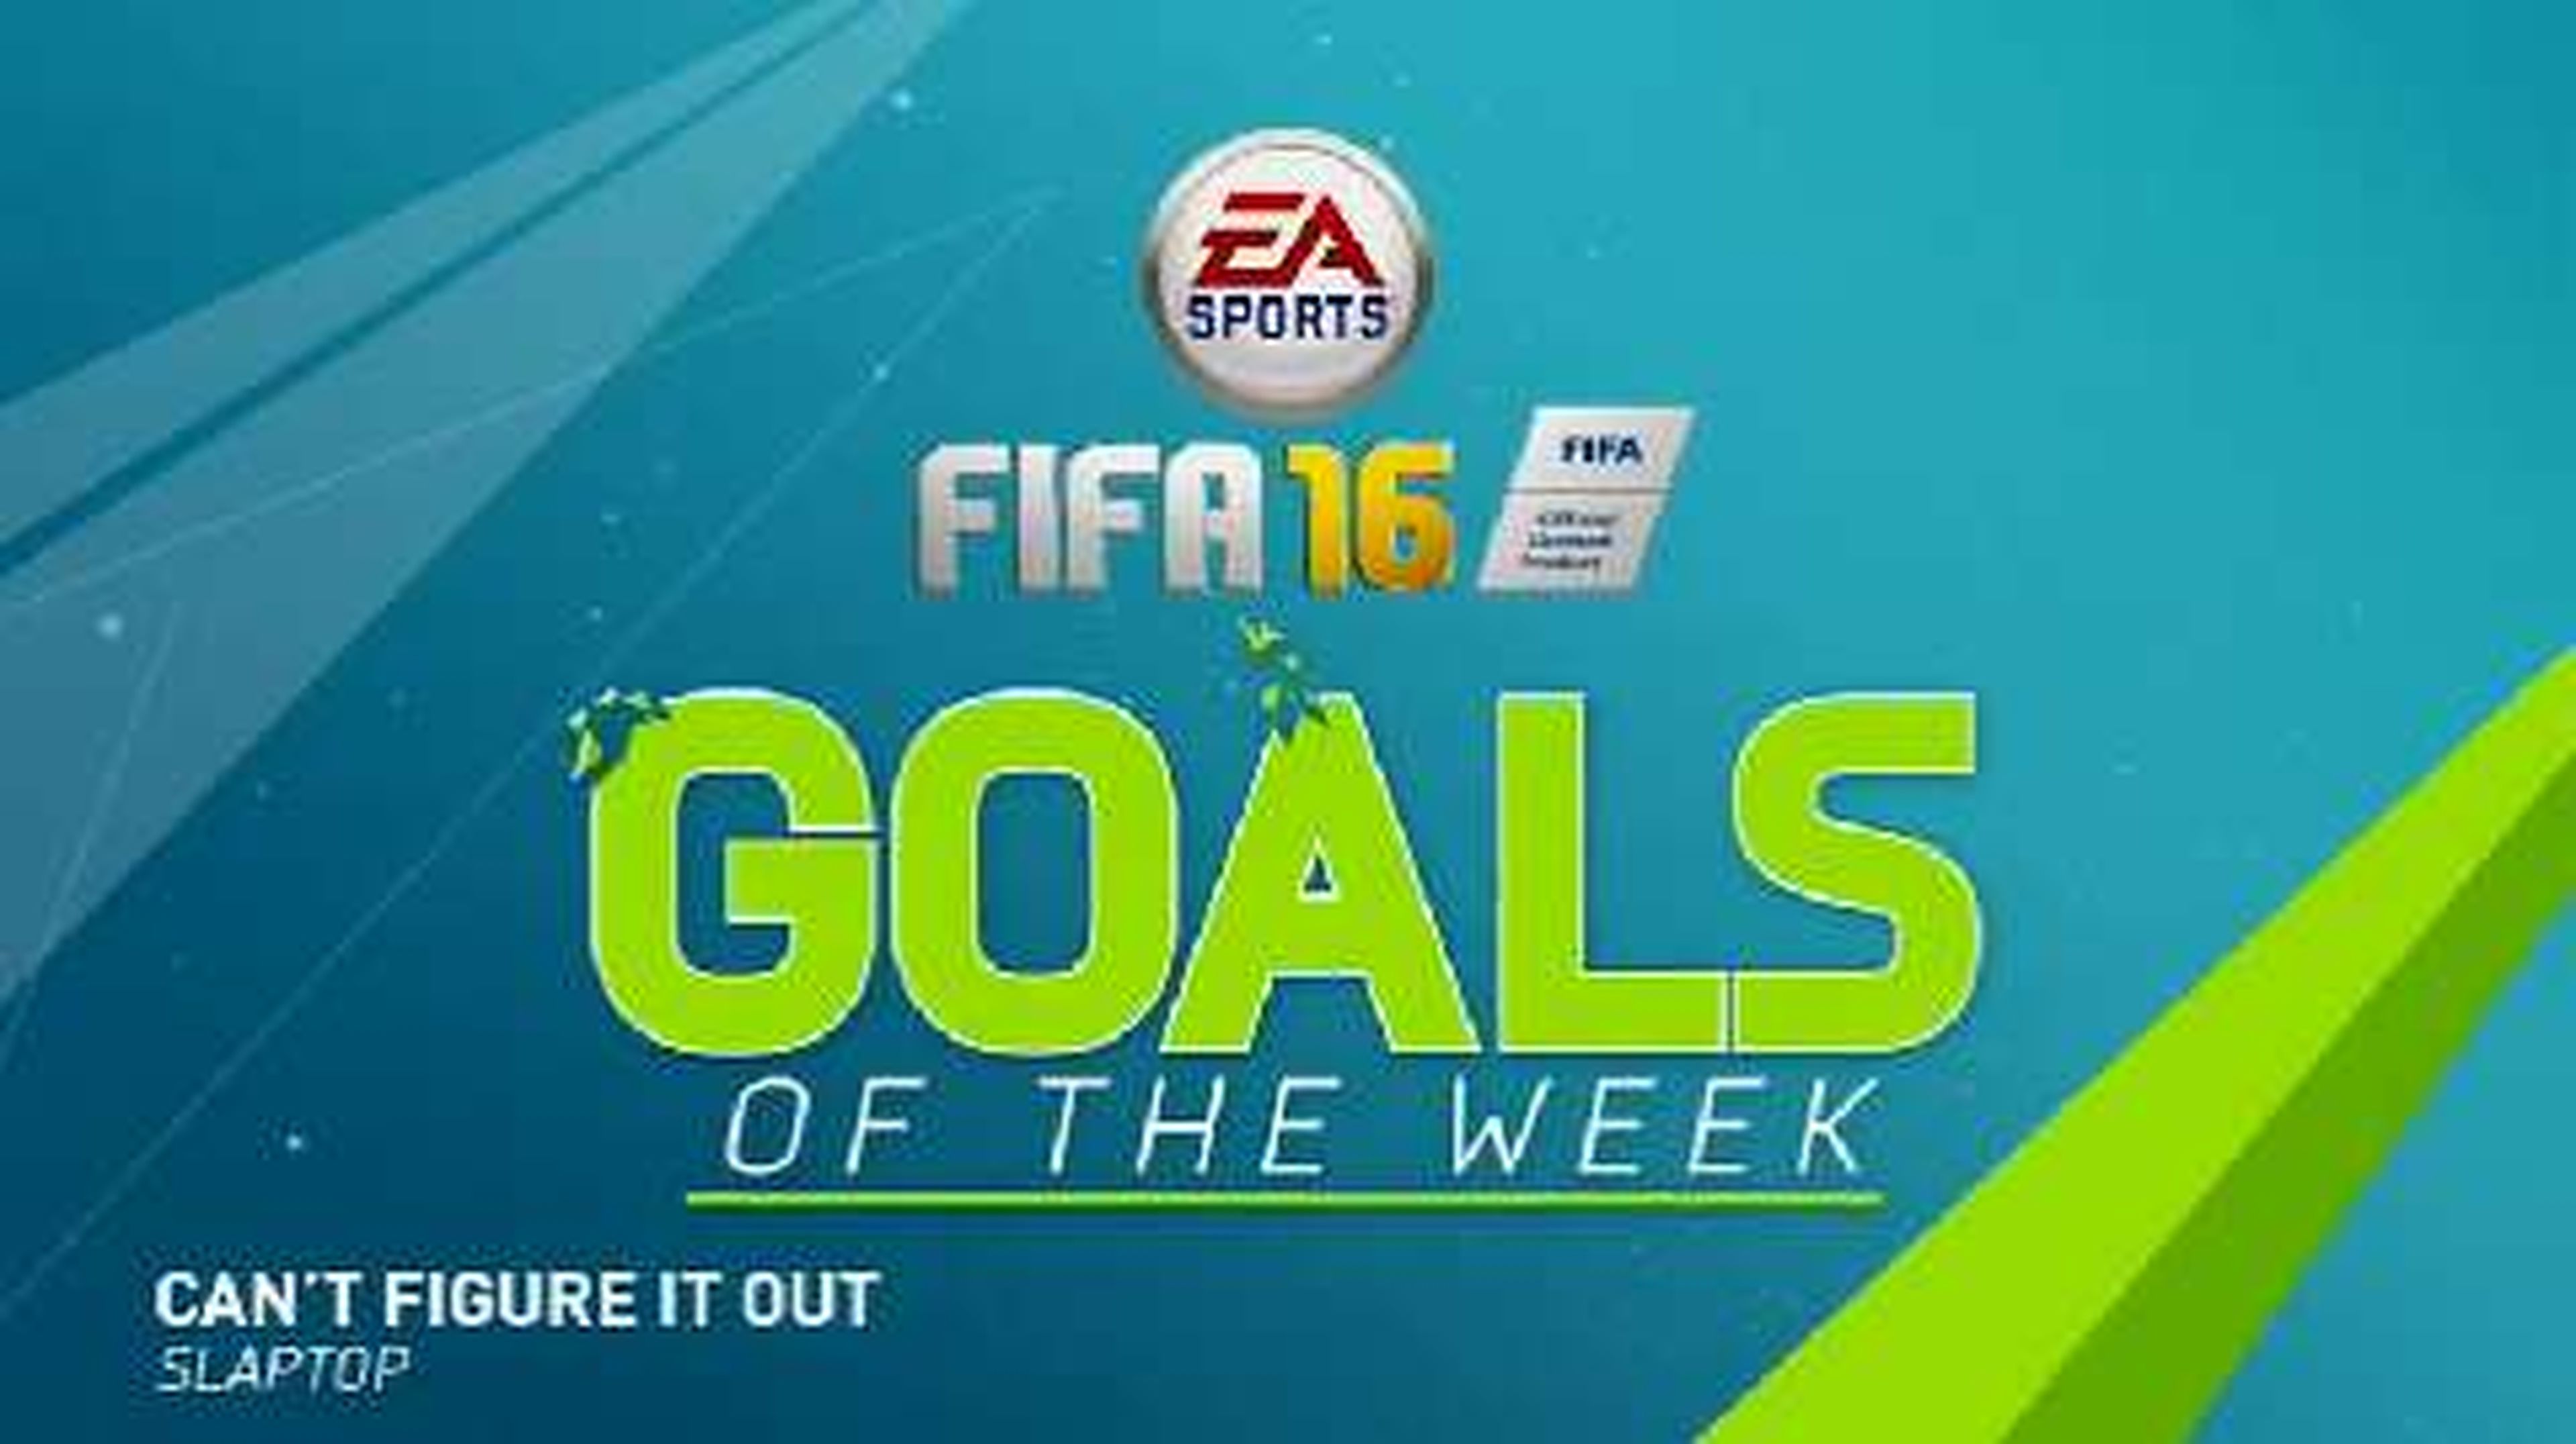 FIFA 16 - Best Goals of the Week - Round 5